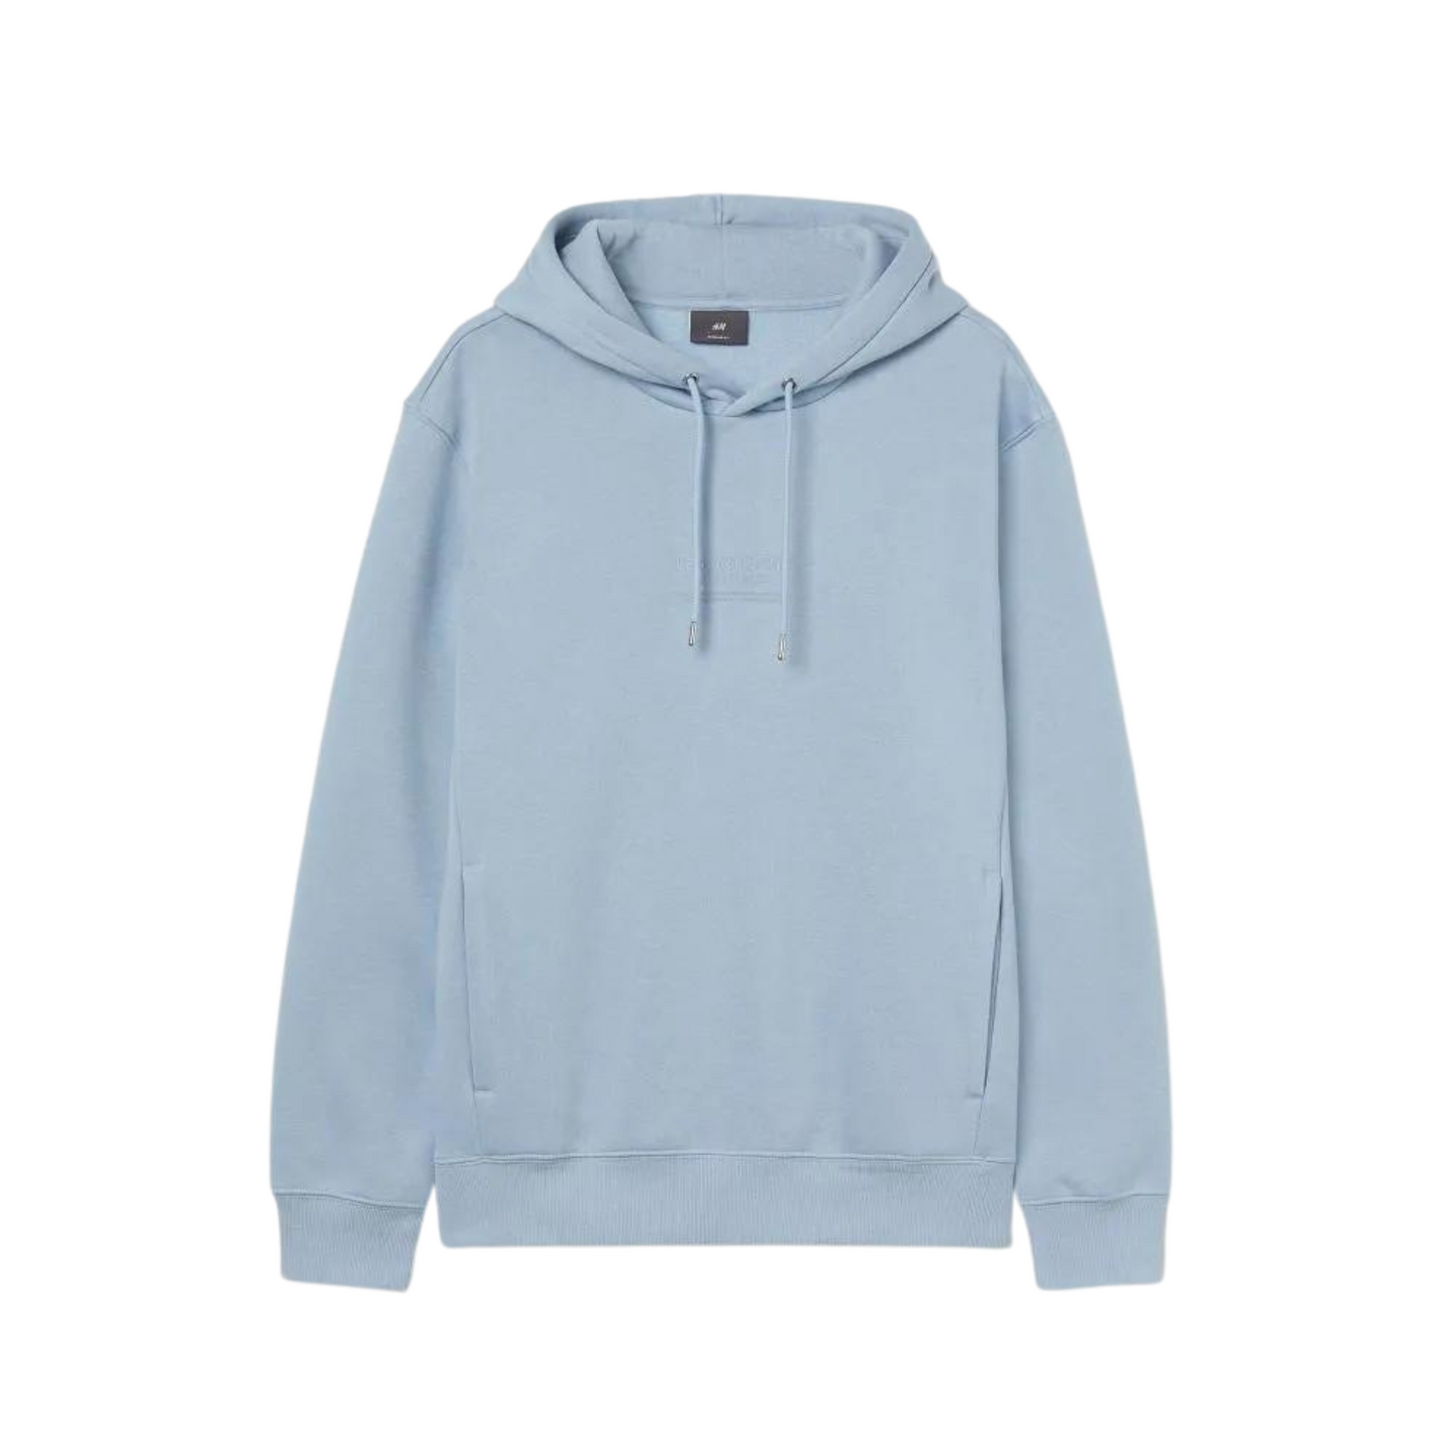 Customizable Hoodie/Sweatshirt